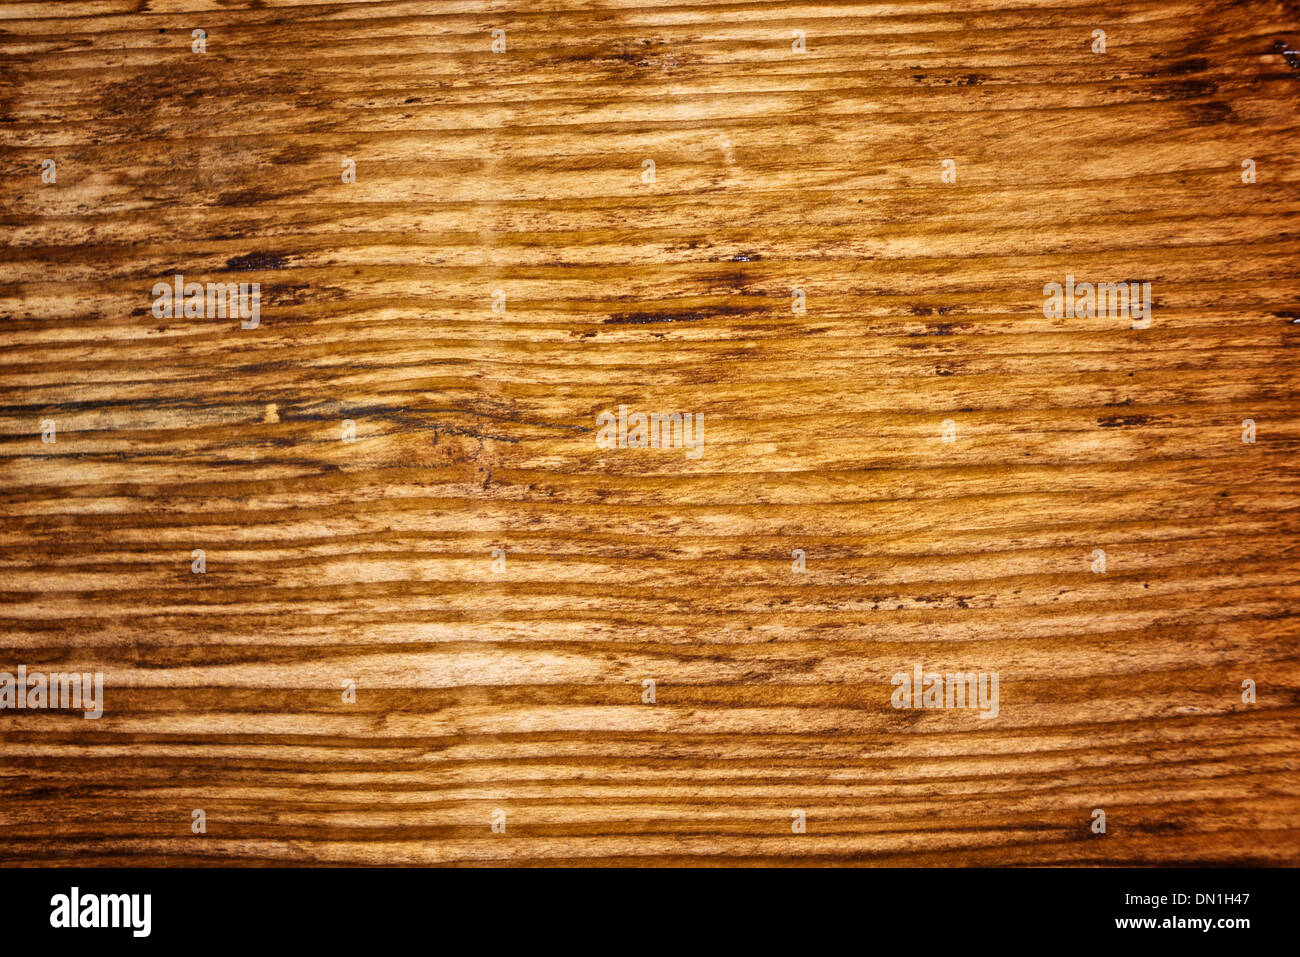 Vân gỗ sồi mang đến sự tinh tế và sang trọng cho nội thất của bạn. Hãy chiêm ngưỡng hình ảnh về vân gỗ sồi và khám phá những đường nét tuyệt đẹp, tạo nên một màu sắc và hoa văn đặc trưng cho loại gỗ này.